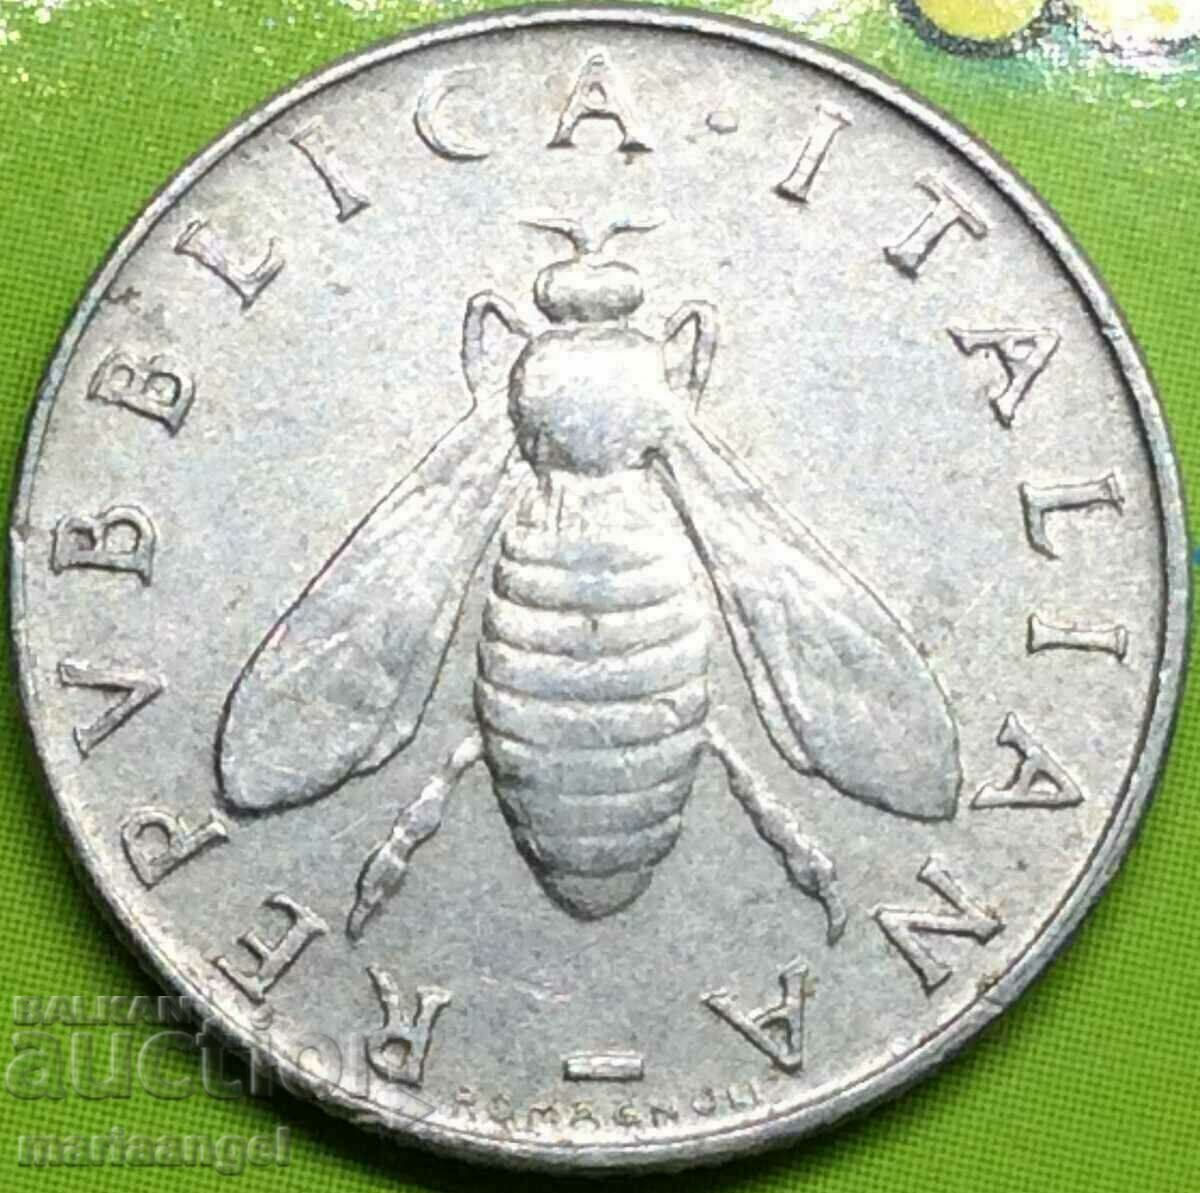 2 λίρες 1954 Ιταλία αλουμίνιο